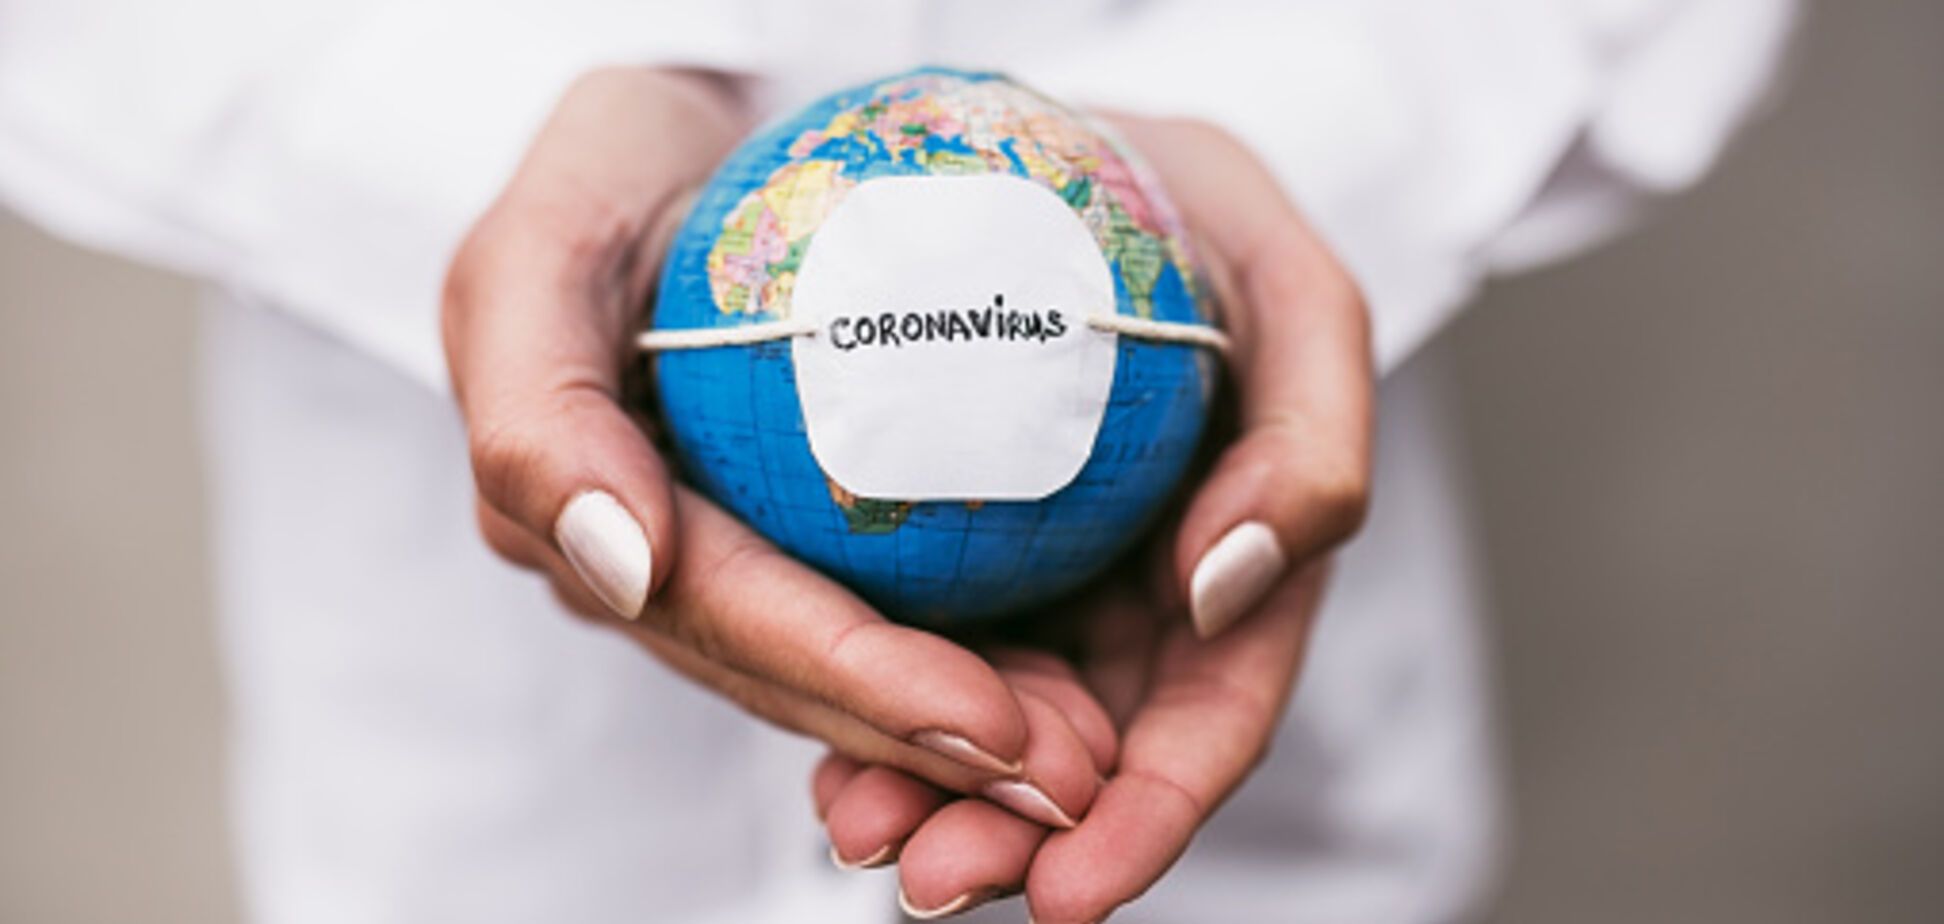 Бразилия может стать новым эпицентром COVID-19: статистика по коронавирусу на 1 июня. Постоянно обновляется